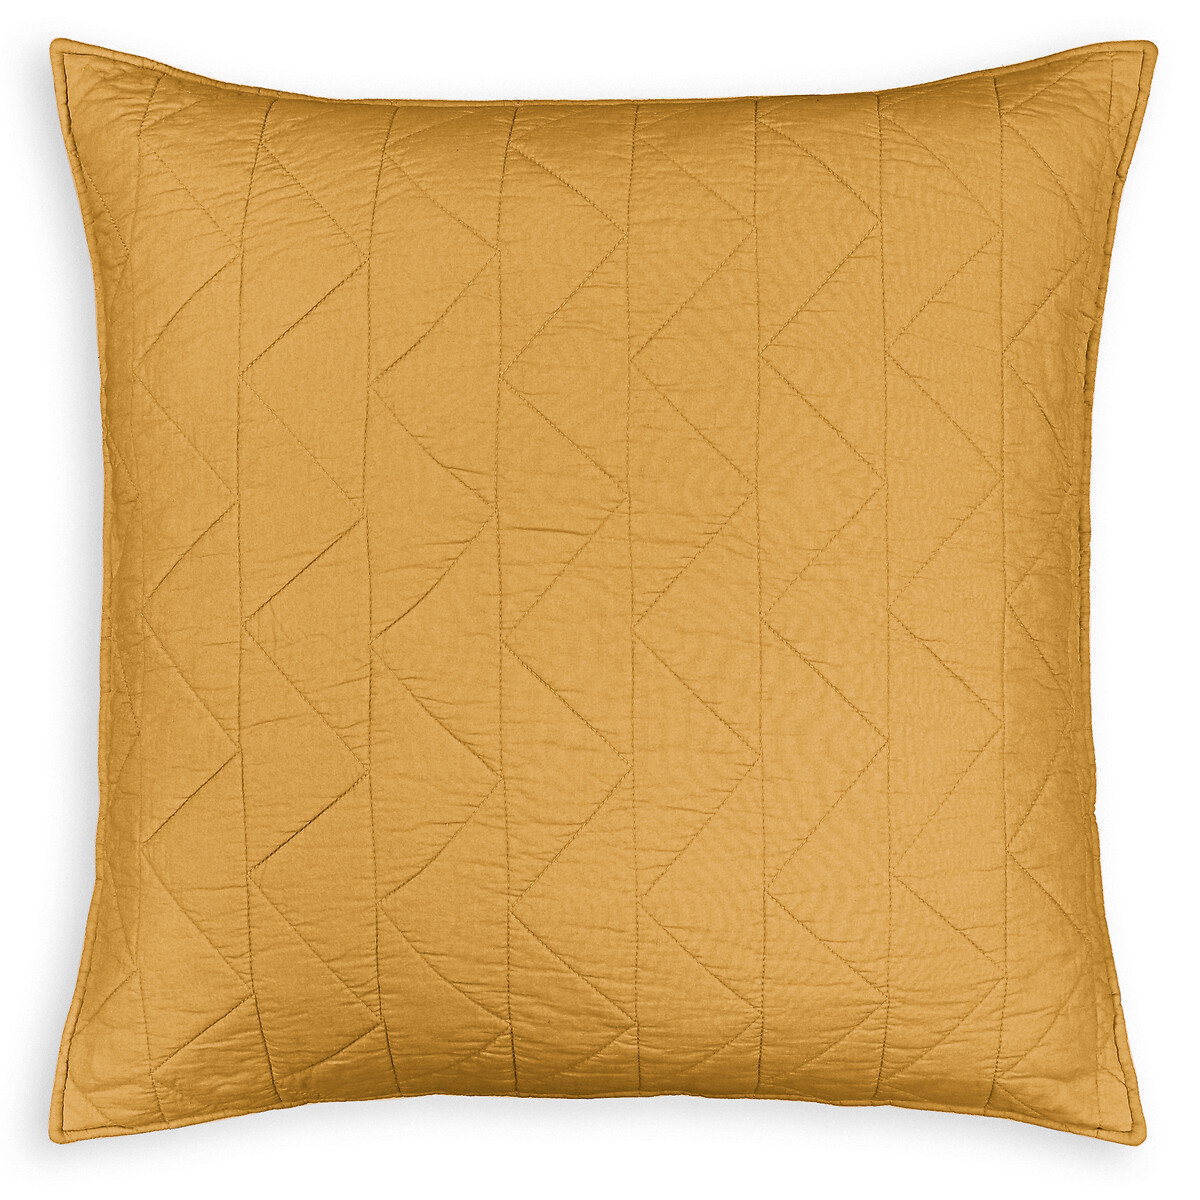 Чехол La Redoute На подушку  наволочка Zig-zag 40 x 40 см желтый, размер 40 x 40 см - фото 2